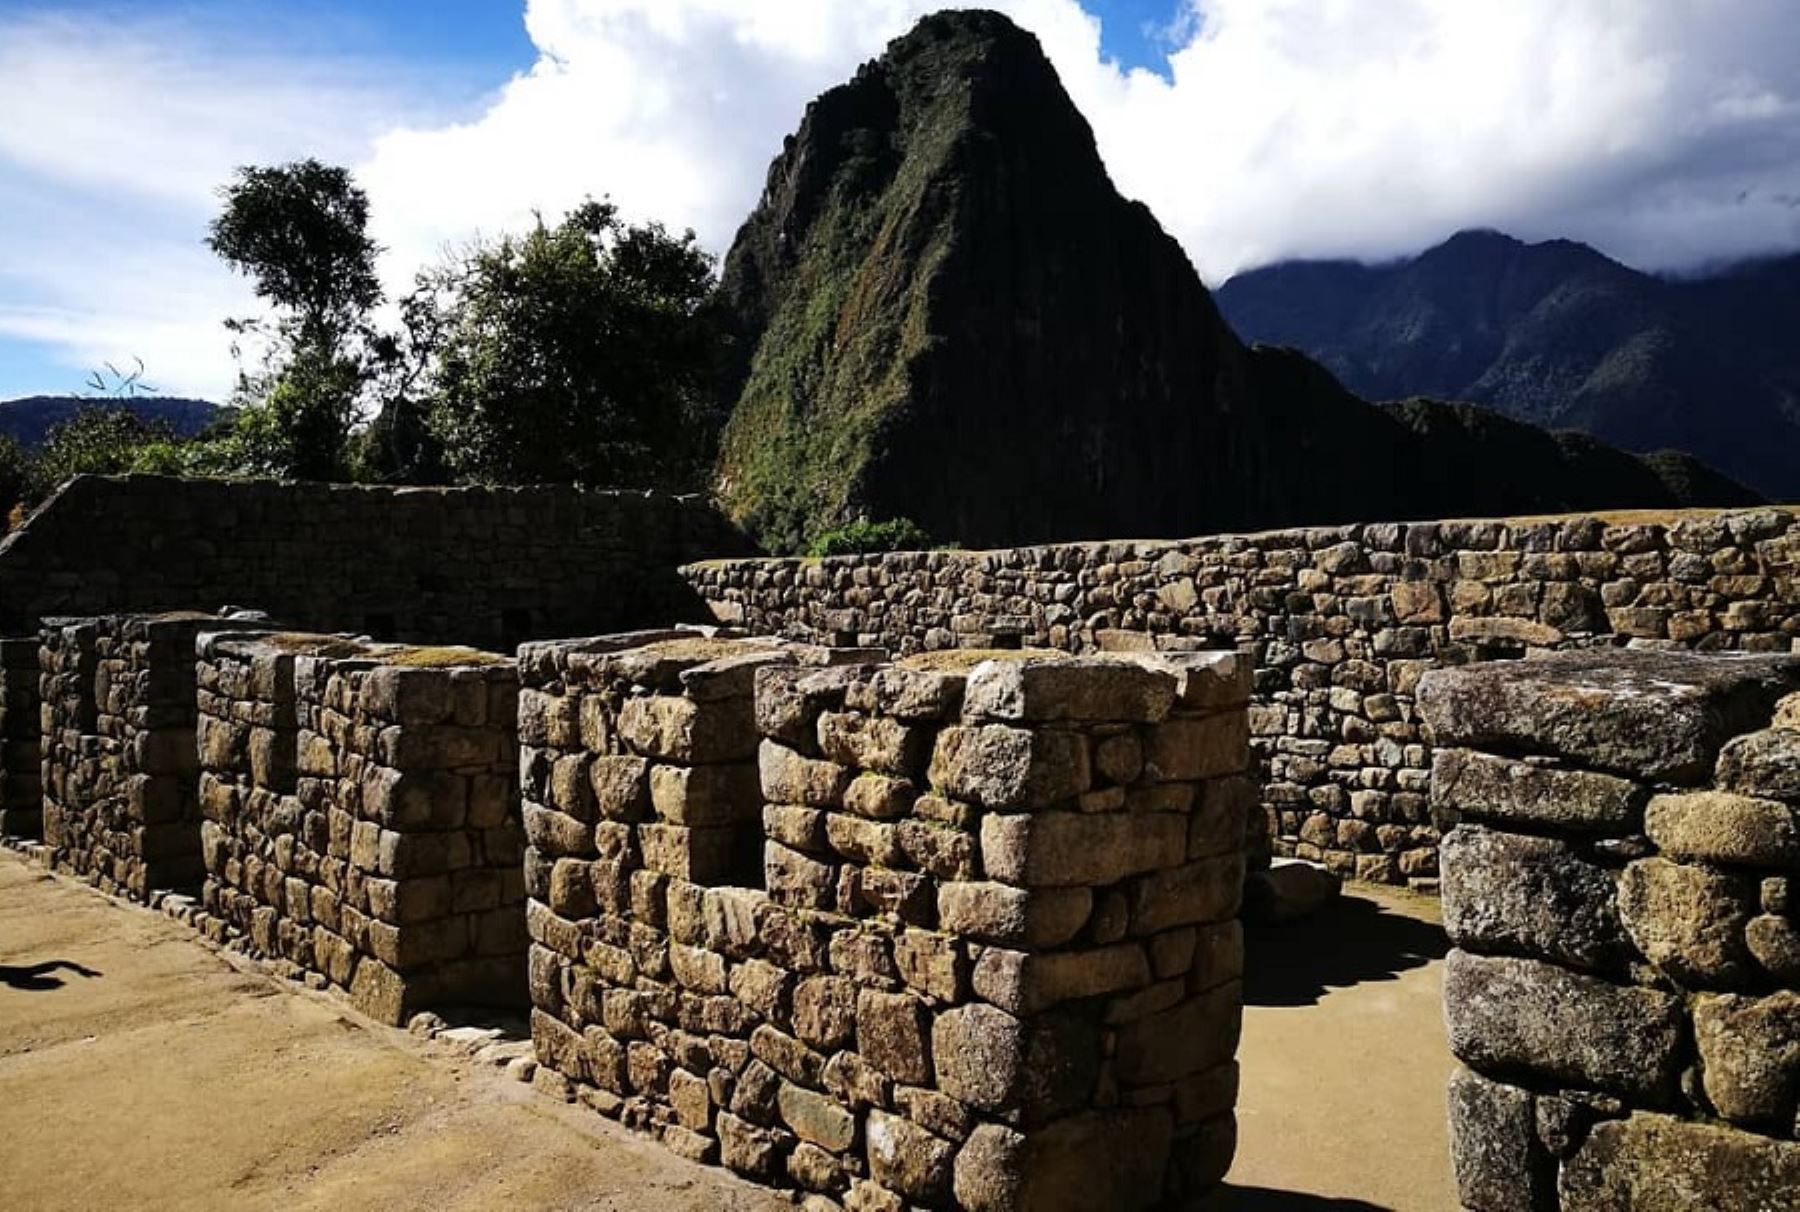 El mapa turístico mundial tiene en Machu Picchu a uno de los destinos que los viajeros de todas las naciones ansían conocer o volver a visitar atraídos por su formidable y enigmática edificación, considerada un portento de la civilización inca.